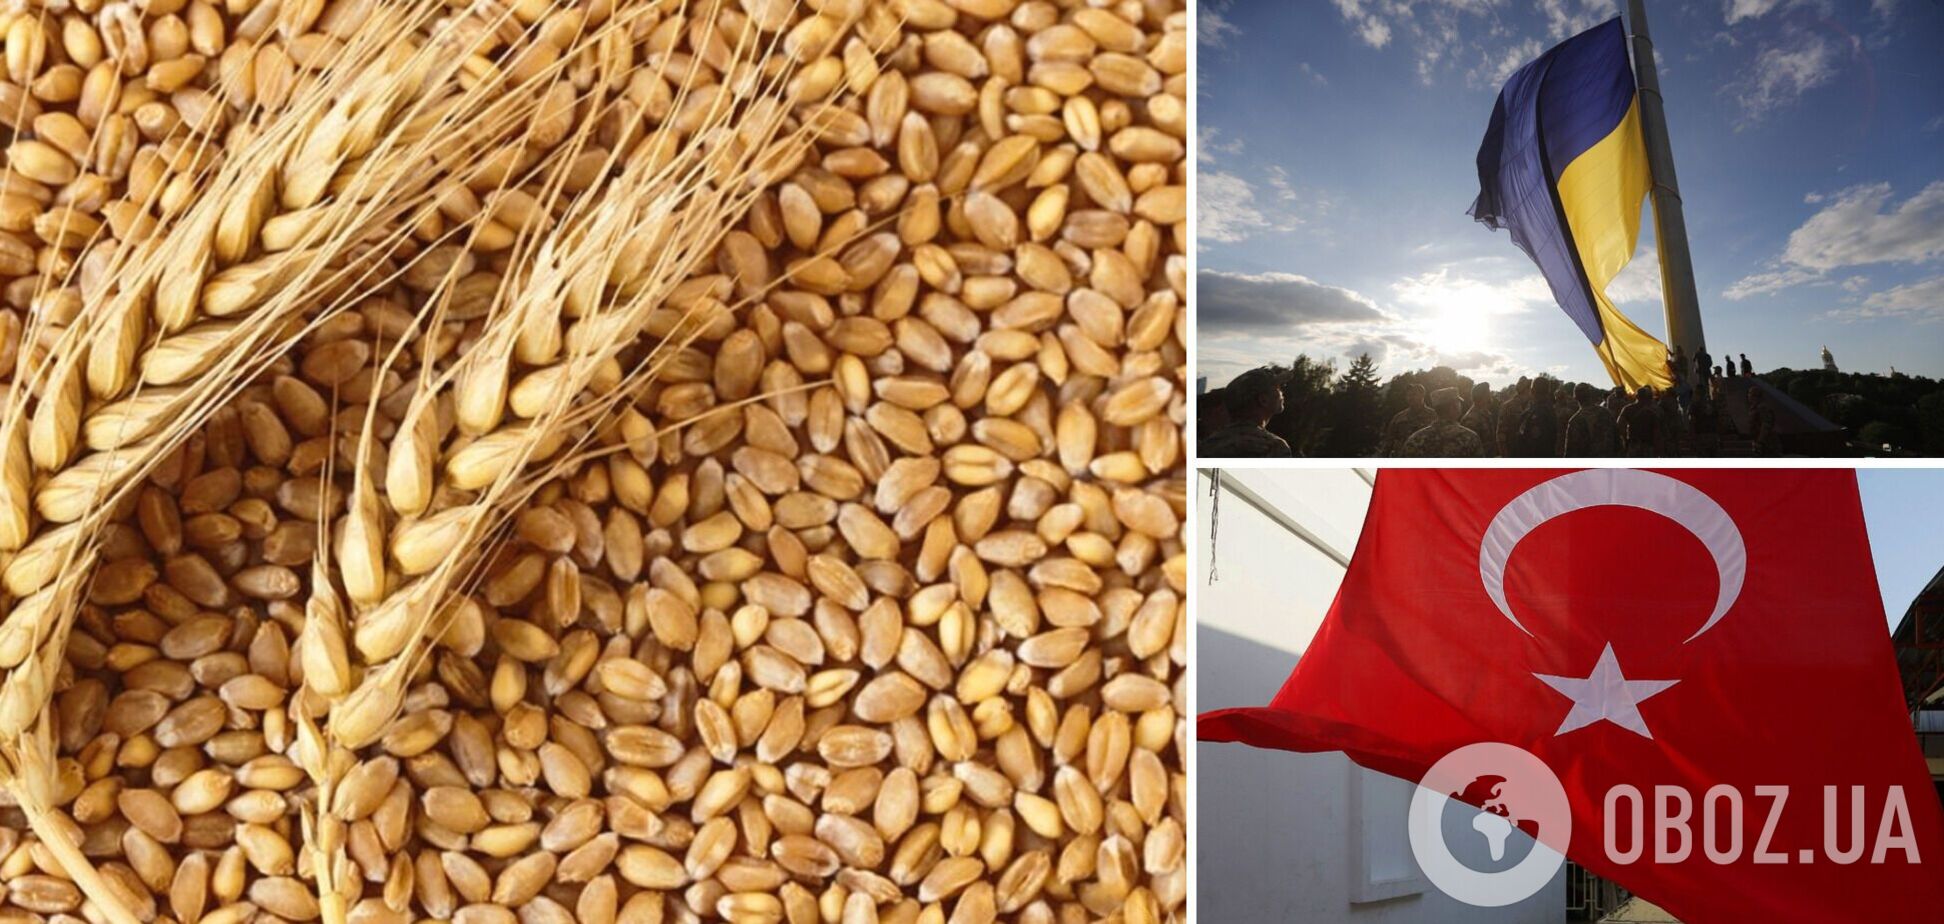 Визначено дату підписання домовленості щодо експорту українського зерна